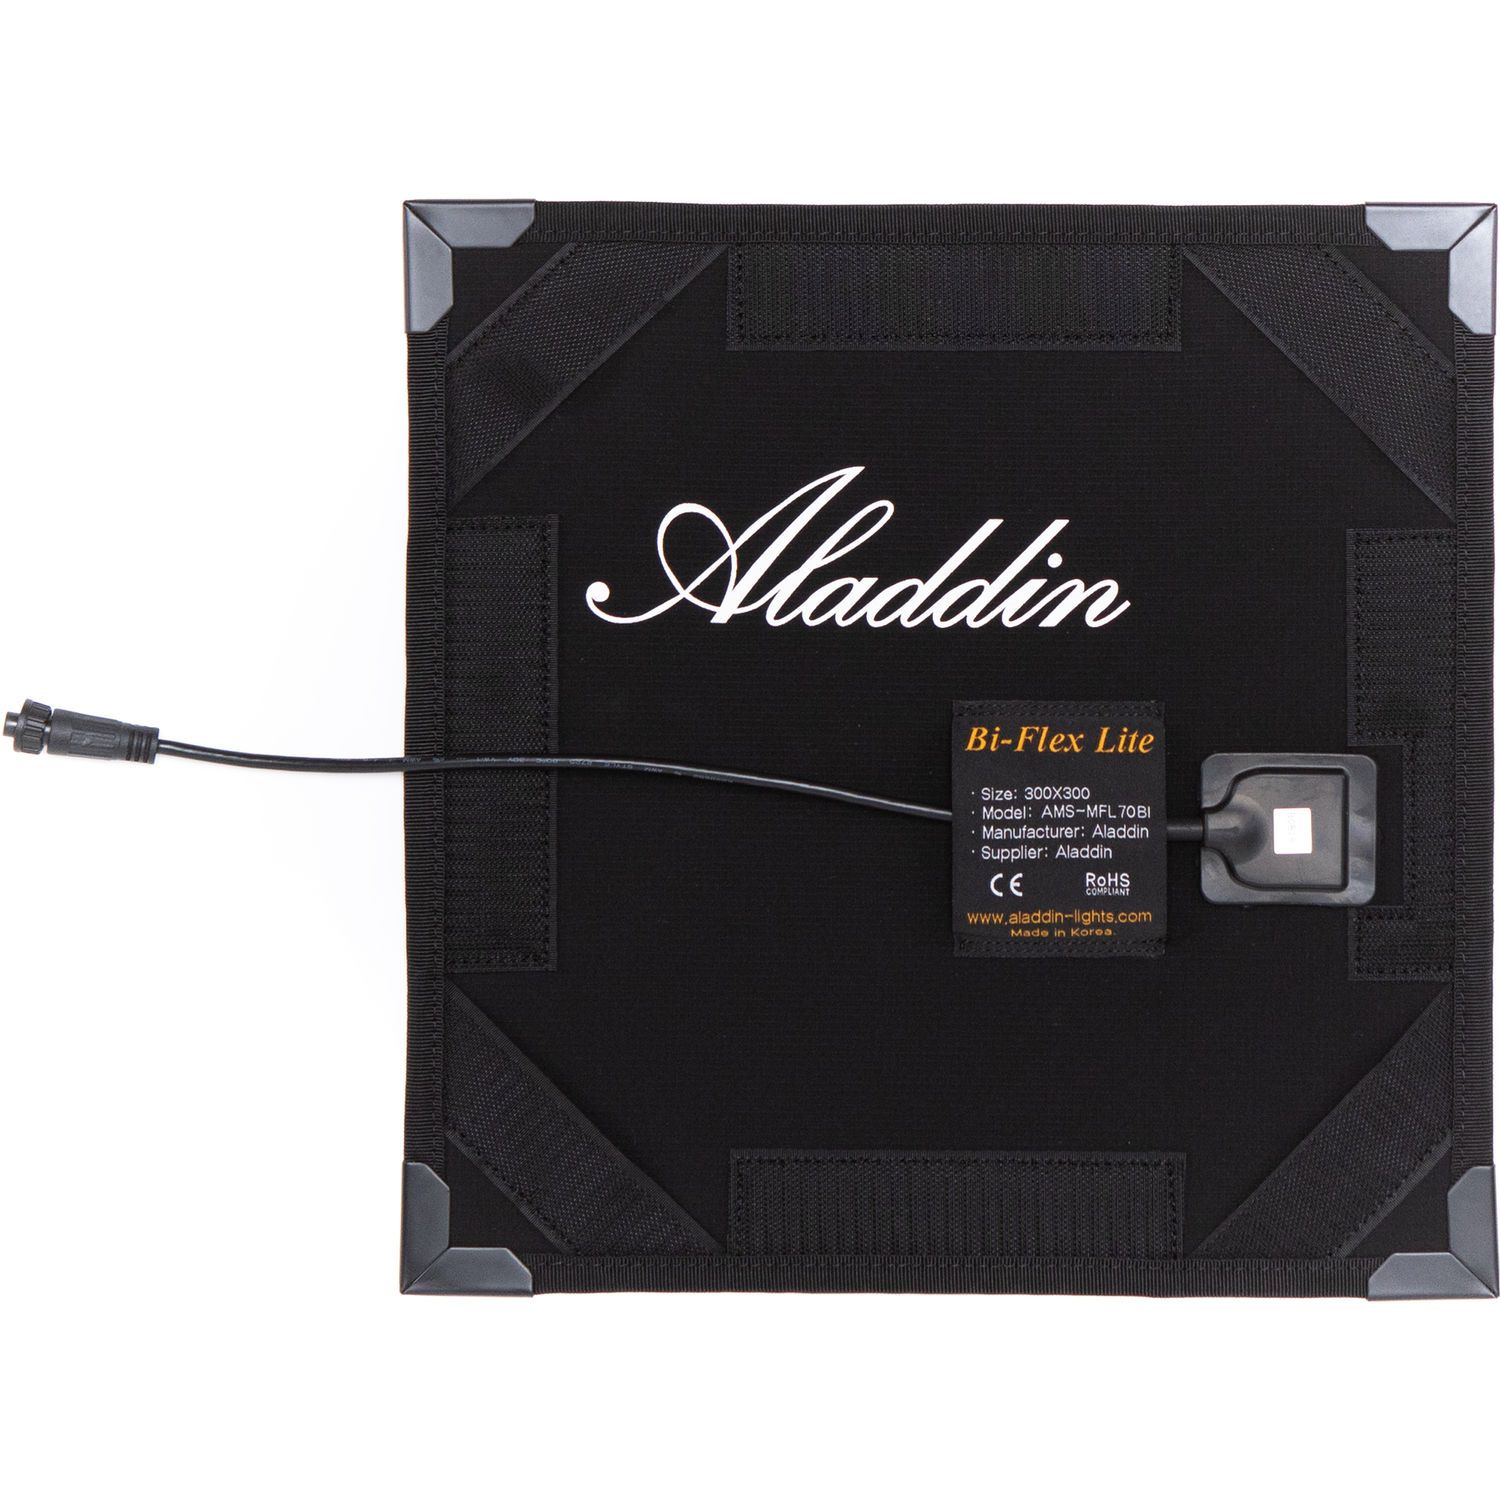 ALADDIN - Kit Bi-Flex M7 Bi-Color with V-Mount Battery Plate and Case